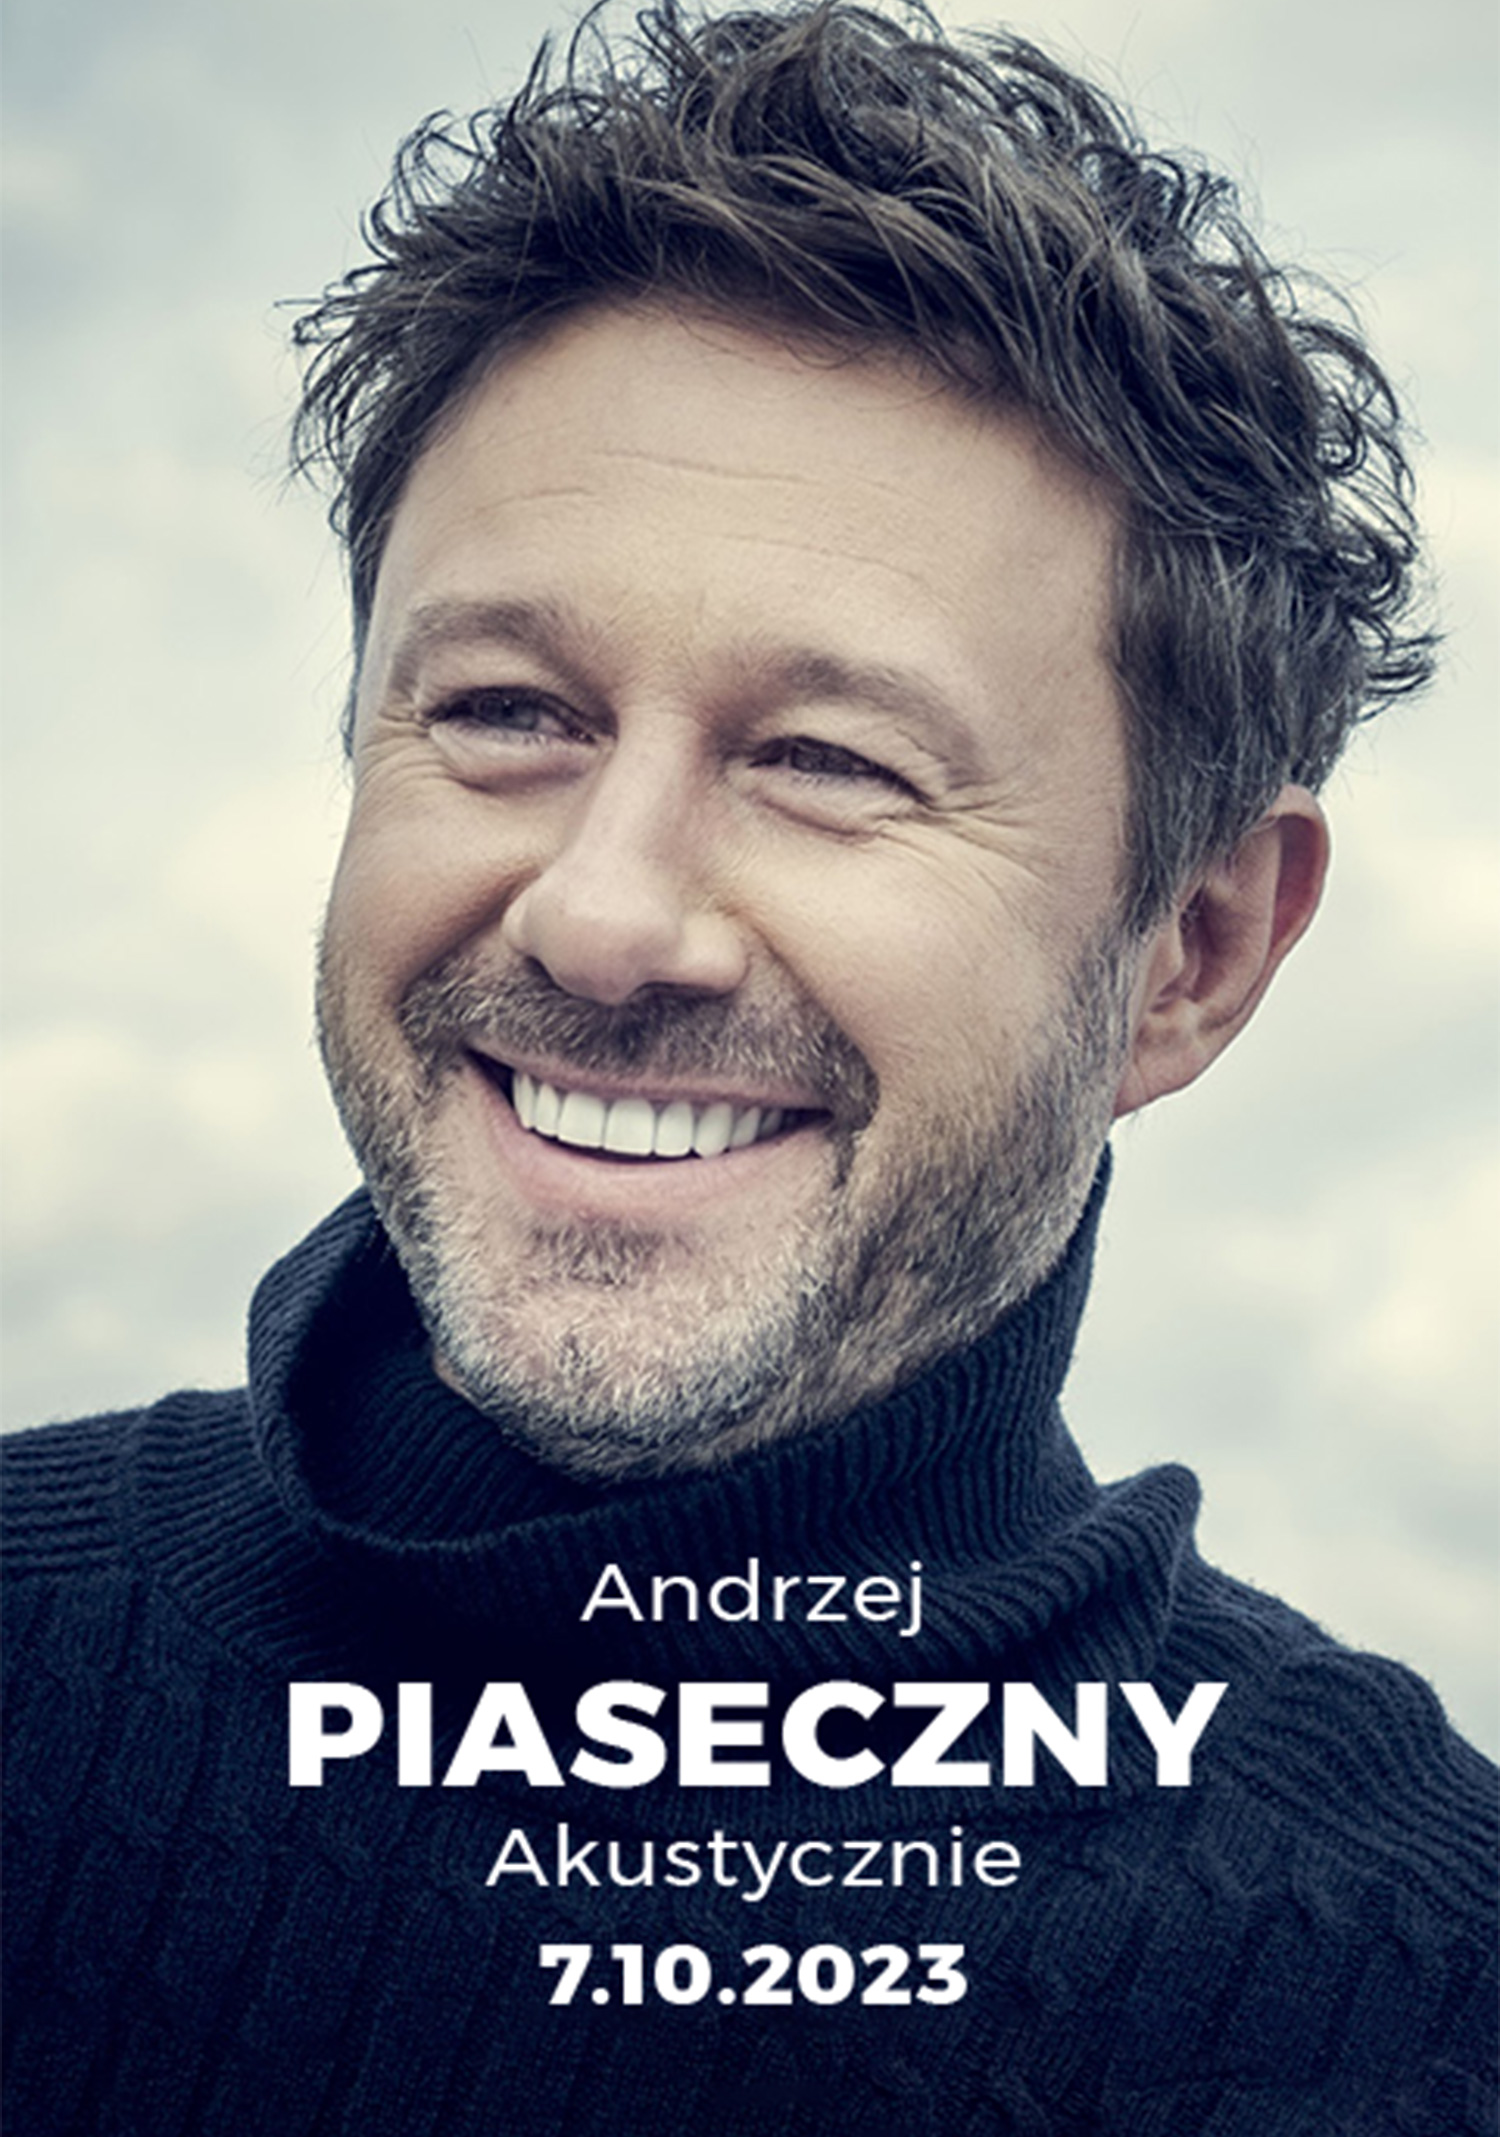 @ScenaKultury Andrzej Piaseczny – Akustycznie w Cieszynie